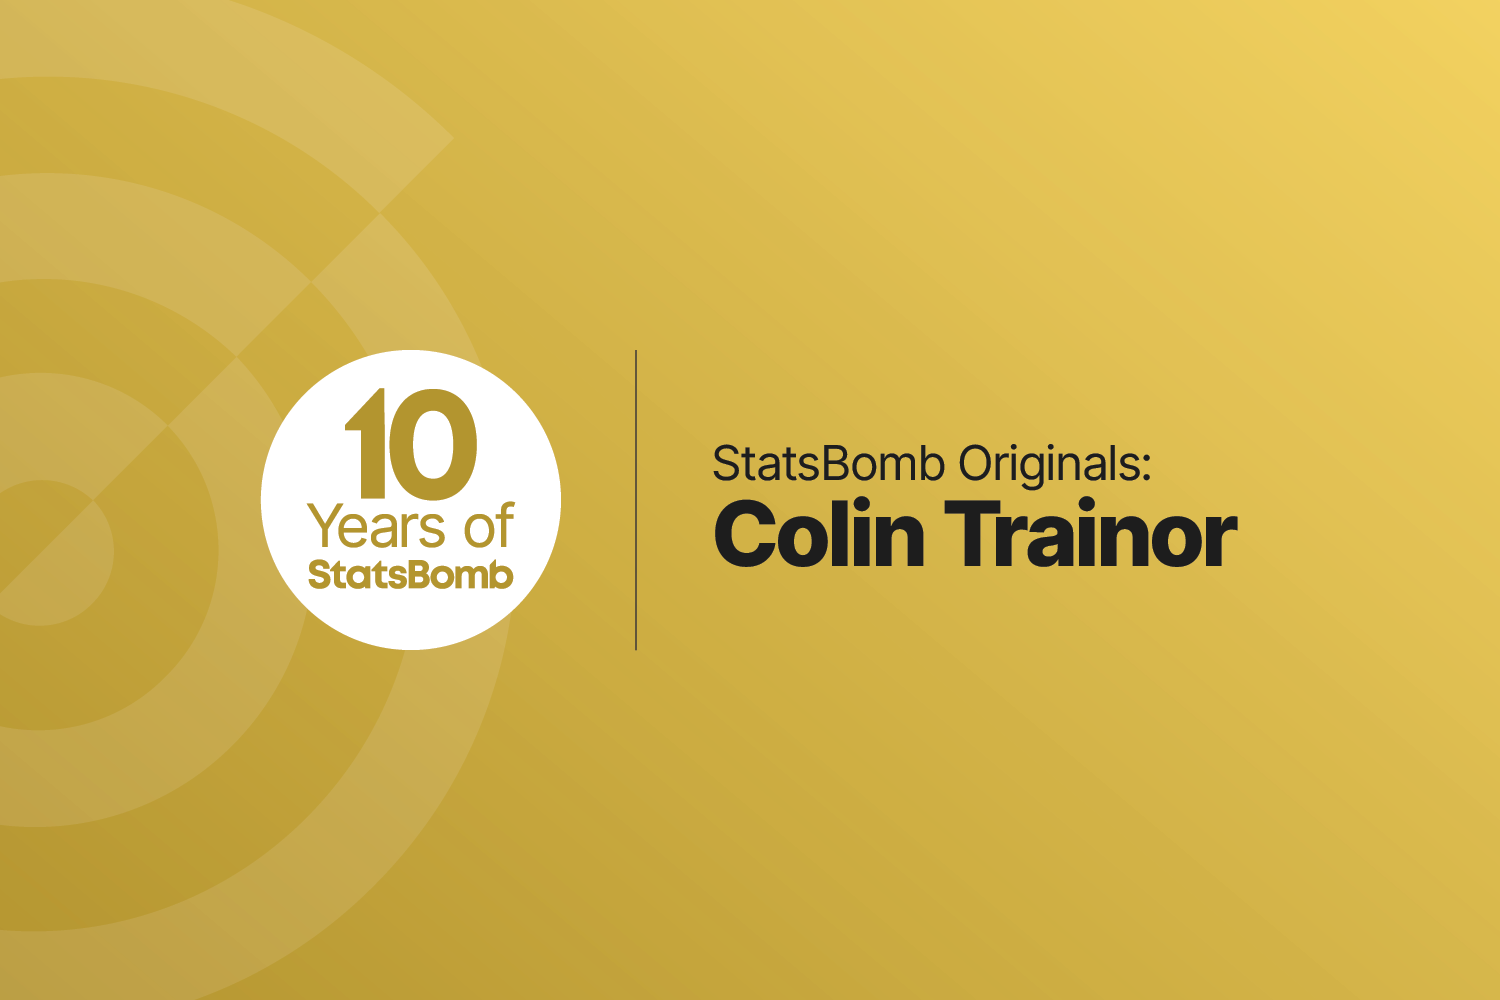 StatsBomb Originals: Colin Trainor